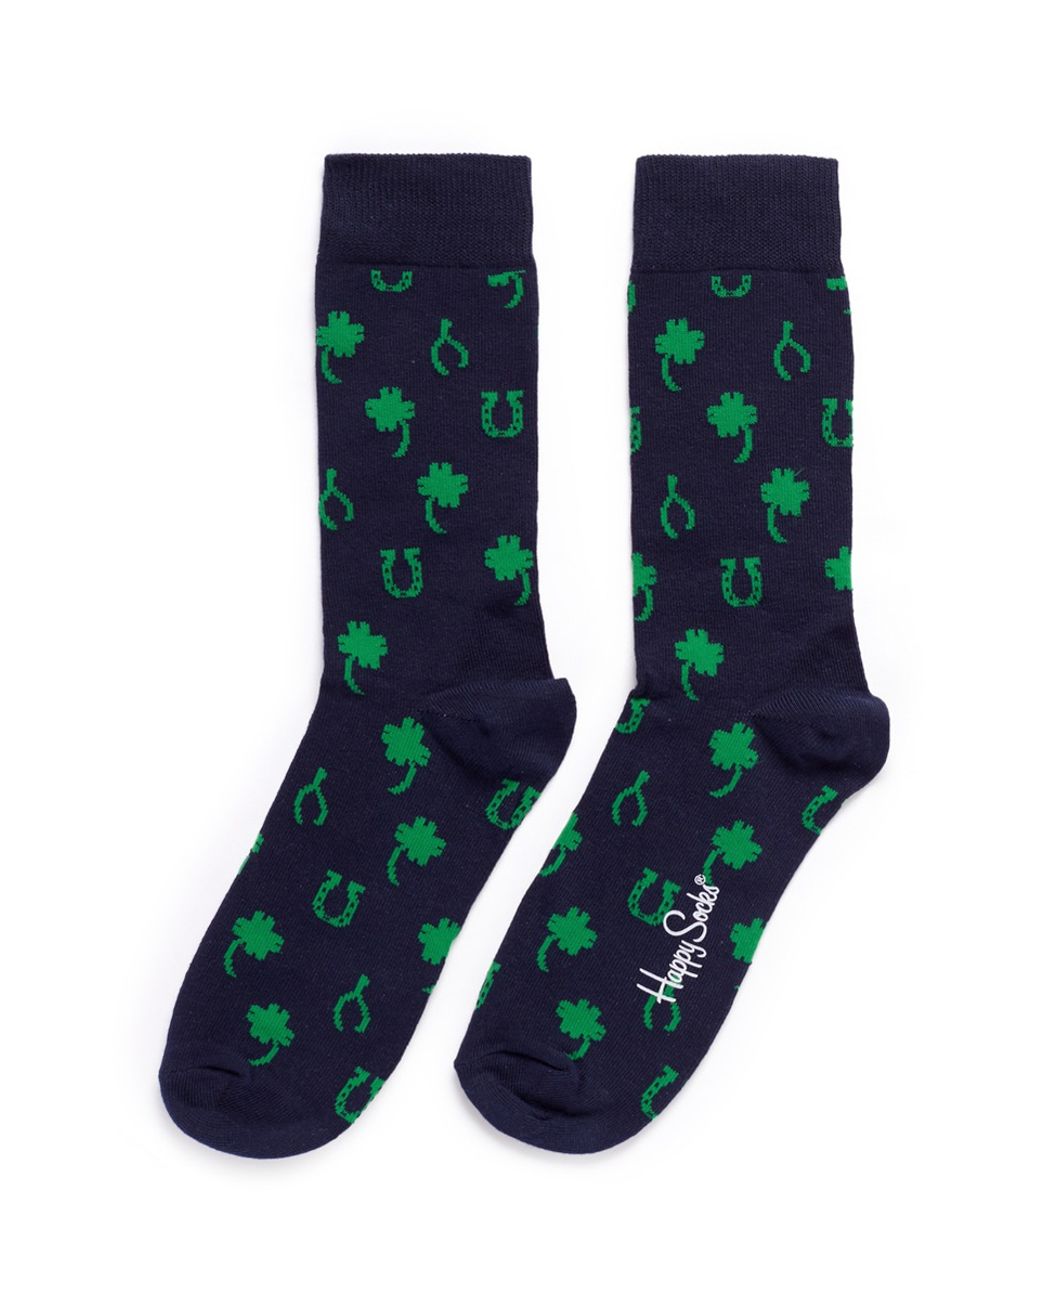 Mens Lucky Socks Novelty Horseshoe Socks 6-11 